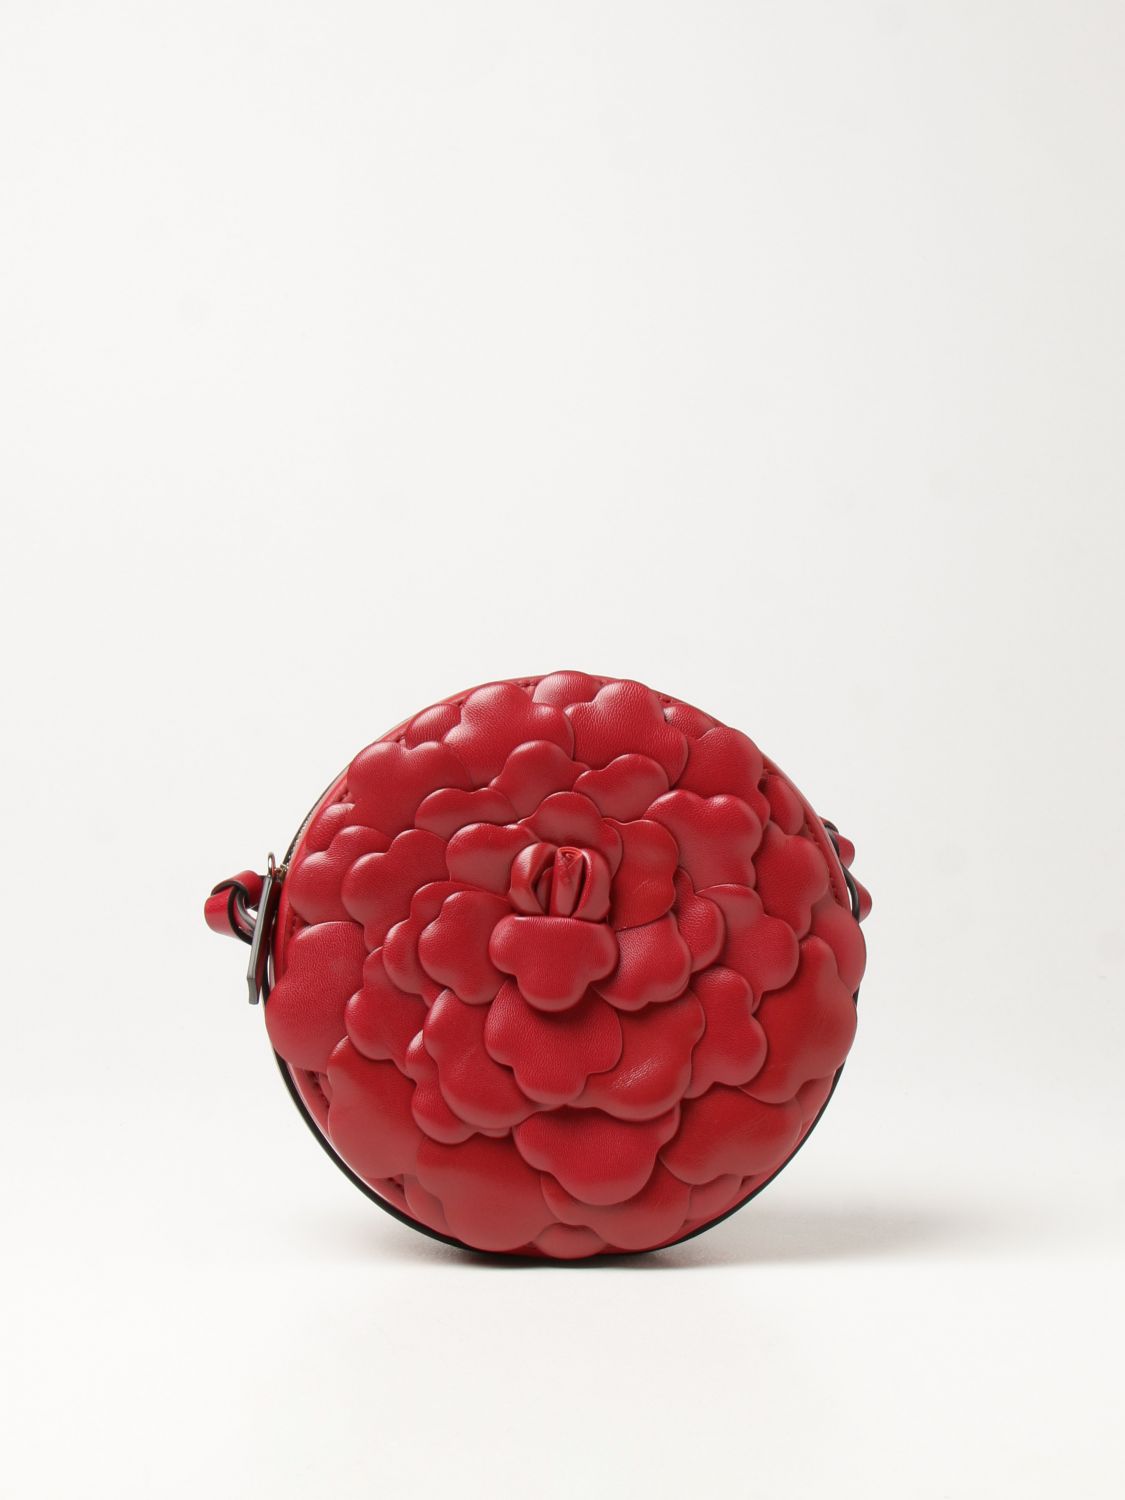 Valentino Garavani Atelier Bag 03 Red Oro Rose Edition Small